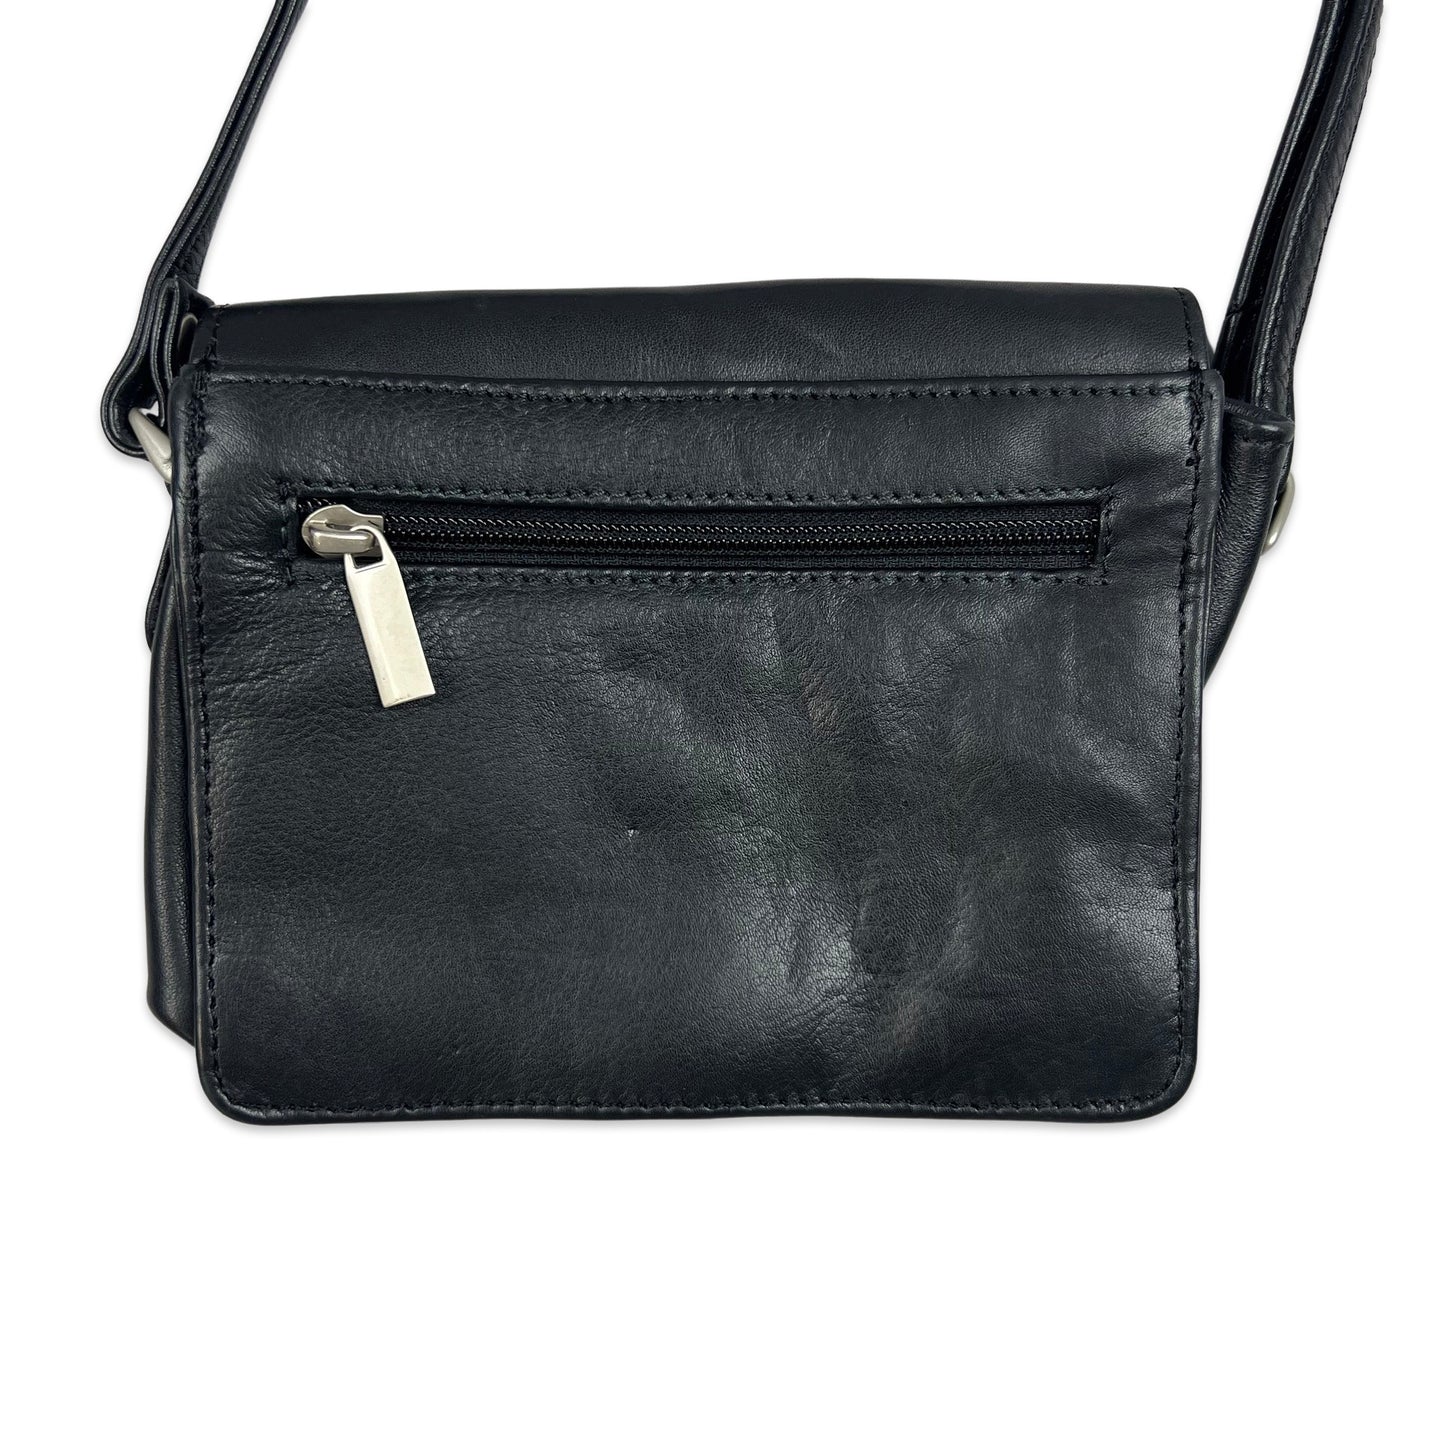 Vintage 90s Black Mini Crossbody Leather Handbag